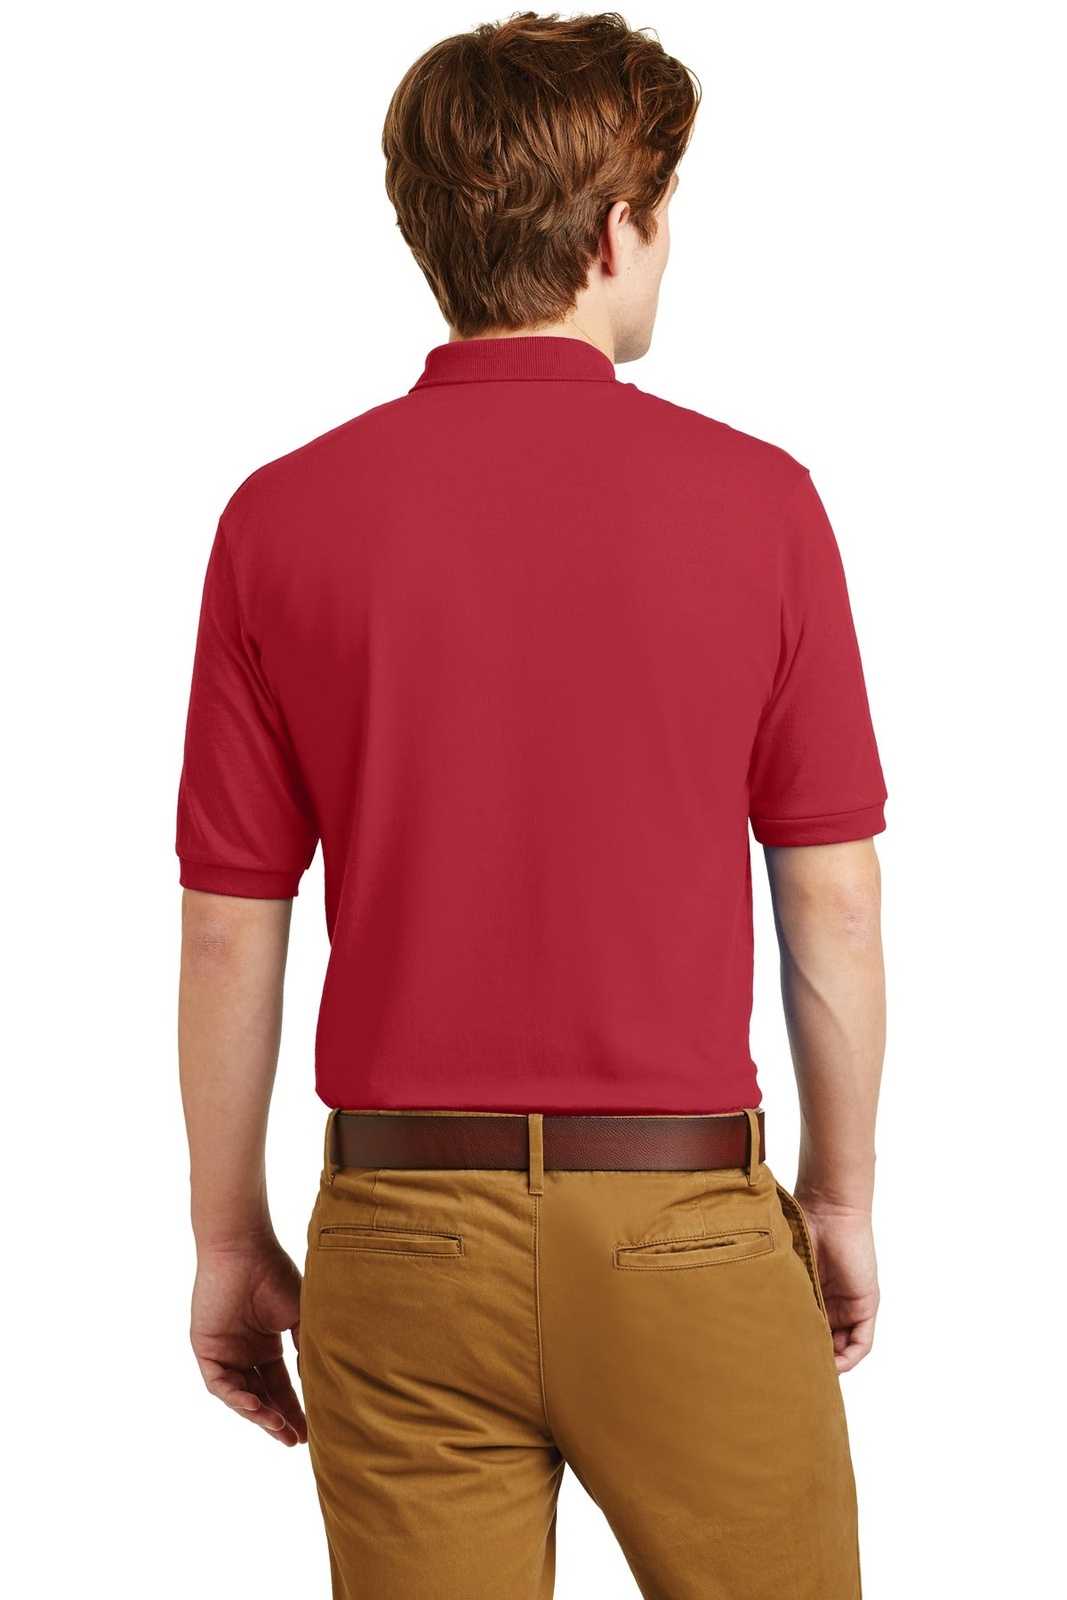 Jerzees 437M Spotshield 56-Ounce Jersey Knit Sport Shirt - True Red - HIT a Double